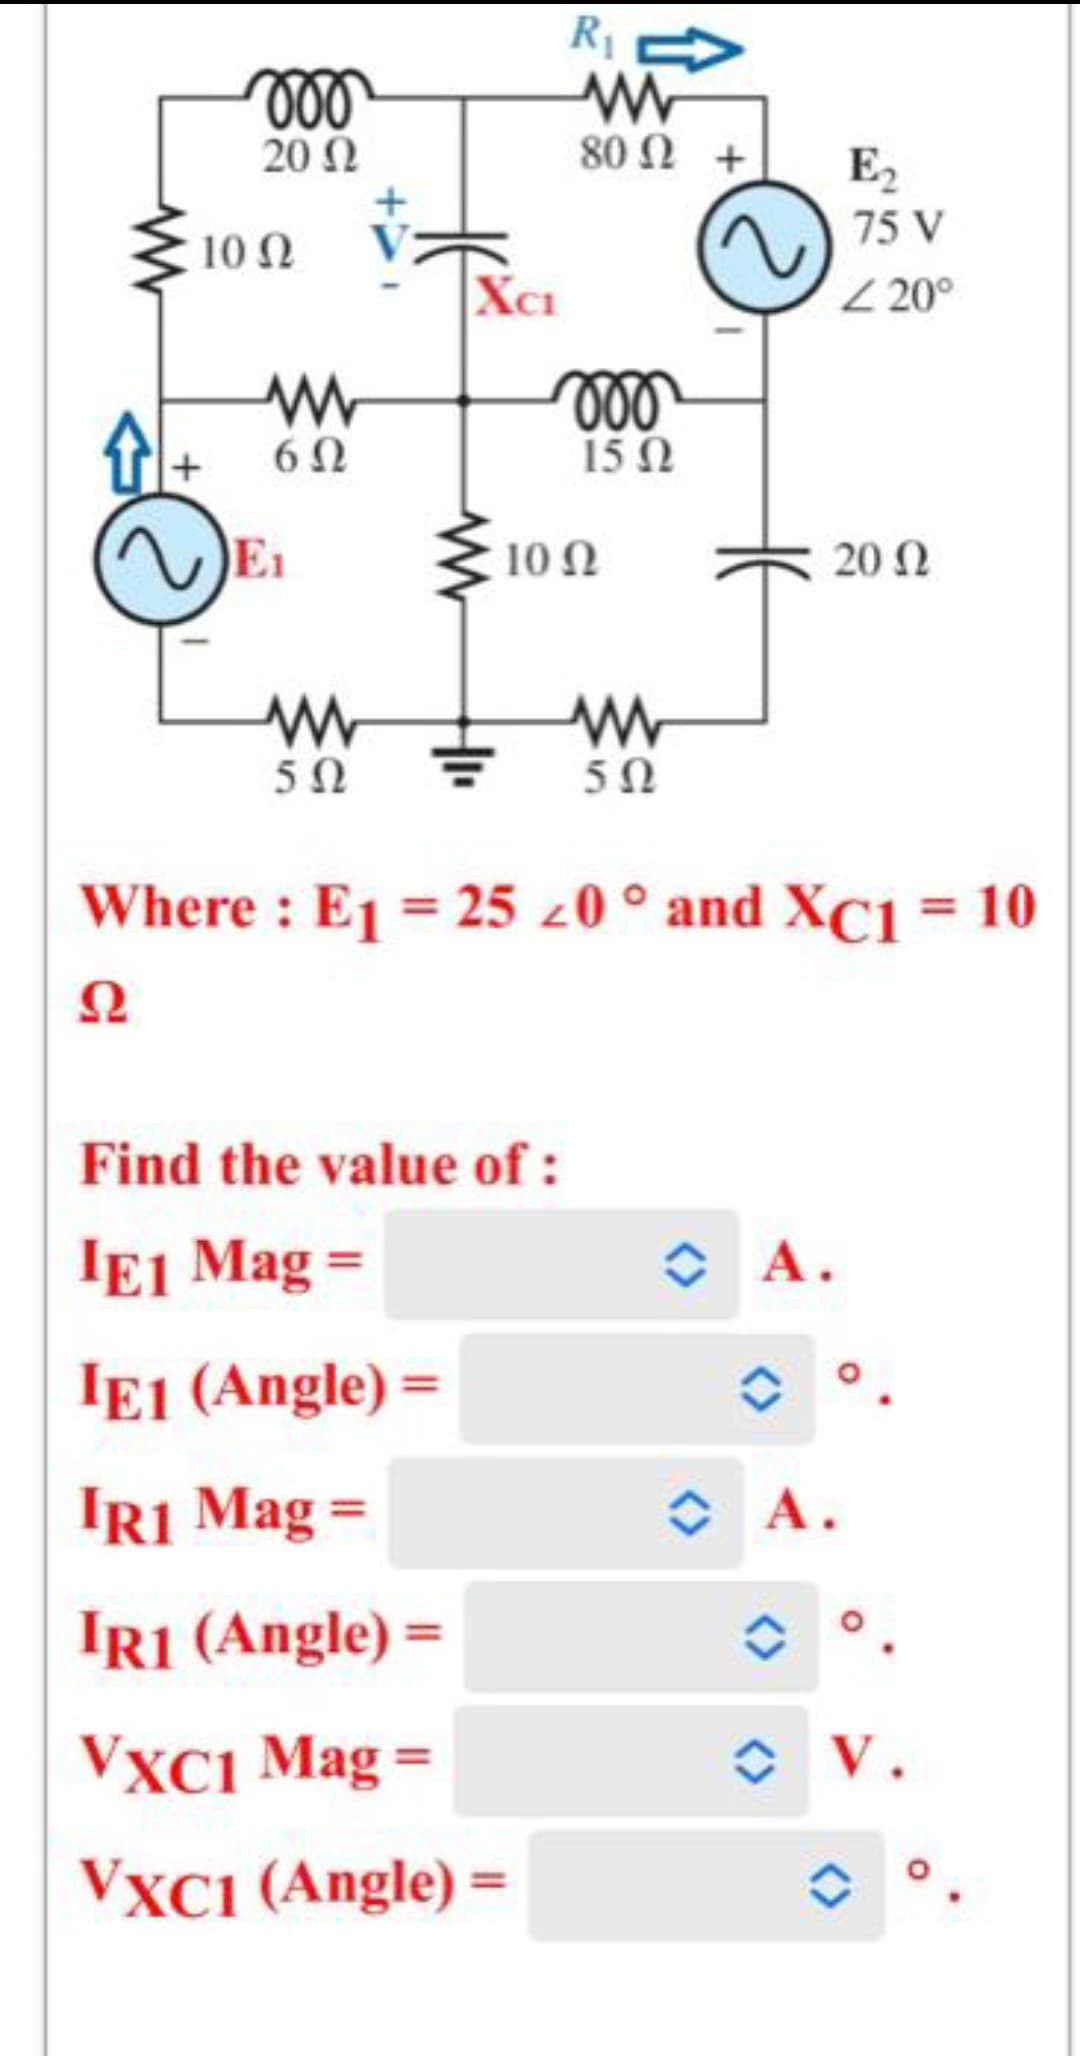 Δ
voo
20 Ω
10 Ω
Μ
6Ω
Μ
5Ω
XCI
R₁
Μ
80 Ω +
moo
15Ω
10 Ω
Find the value of :
IE1 Mag =
ΙΕ1 (Angle) =
IR1 Mag =
IR1 (Angle) =
VXC1 Mag =
VXC1 (Angle) =
Μ
5Ω
Where : E1 = 25 <0 ° and XC1 = 10
Ω
~ A.
E,
75 V
<20°
Α.
20 Ω
V.